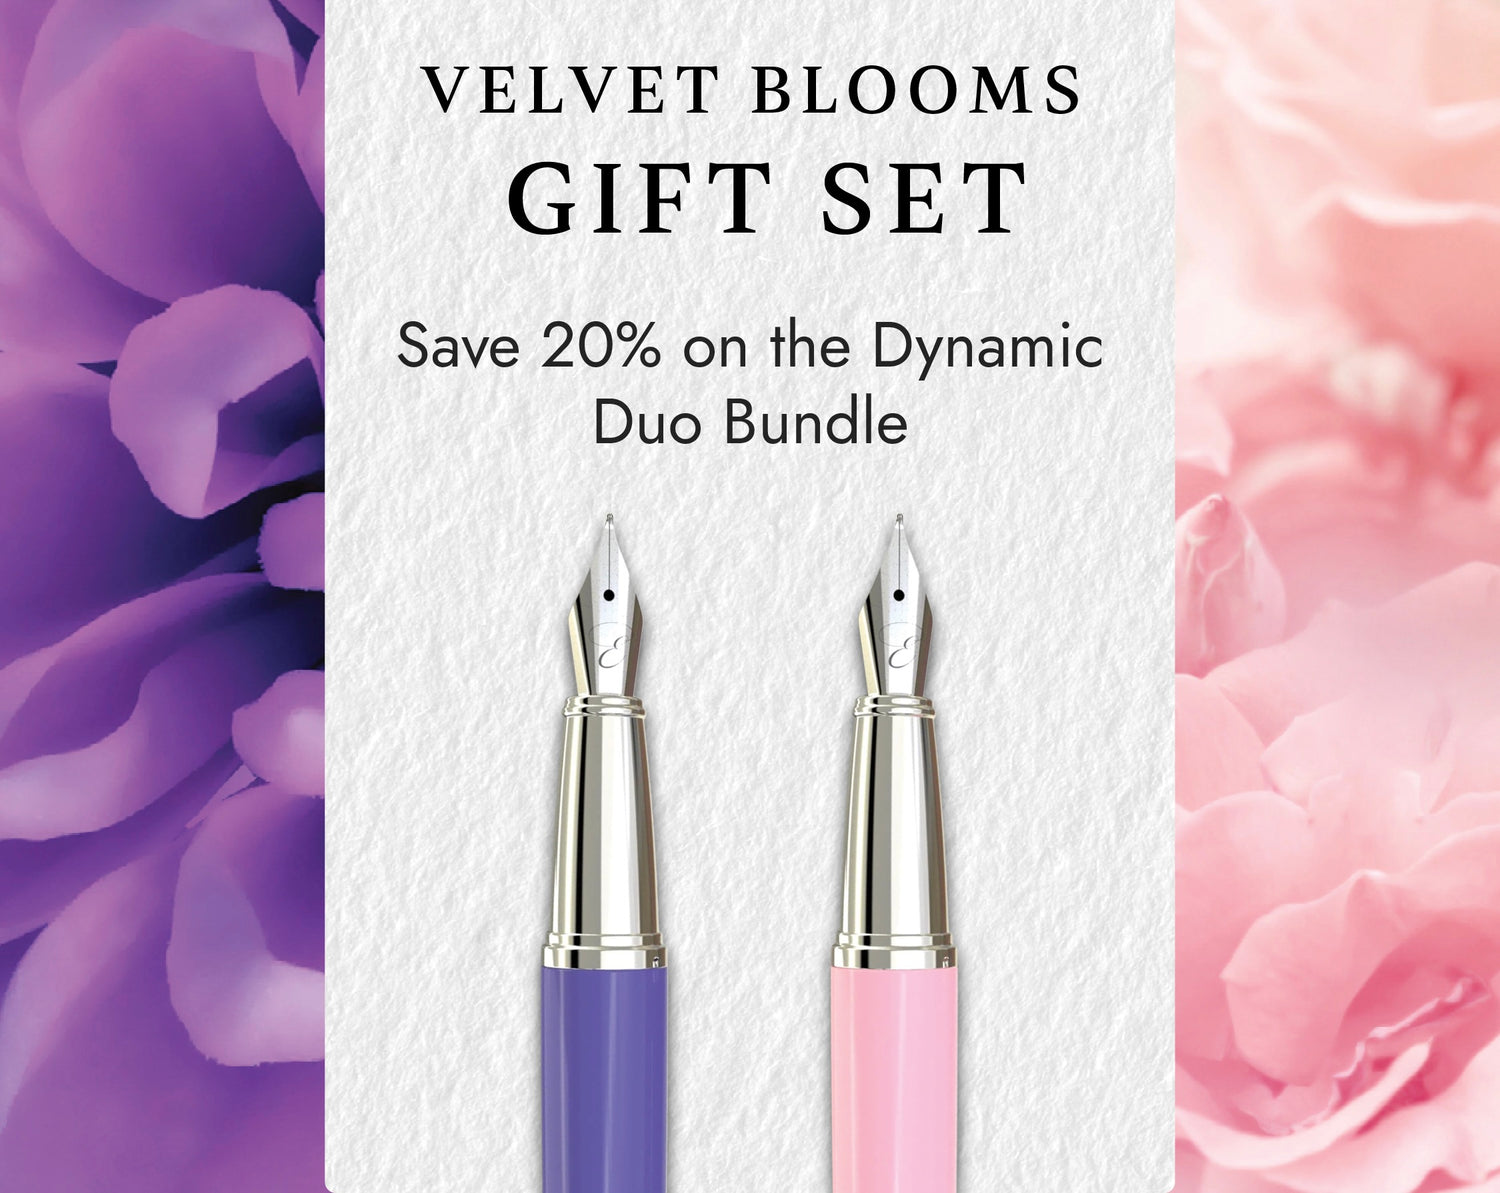  Velvet Blooms Dynamic Duo